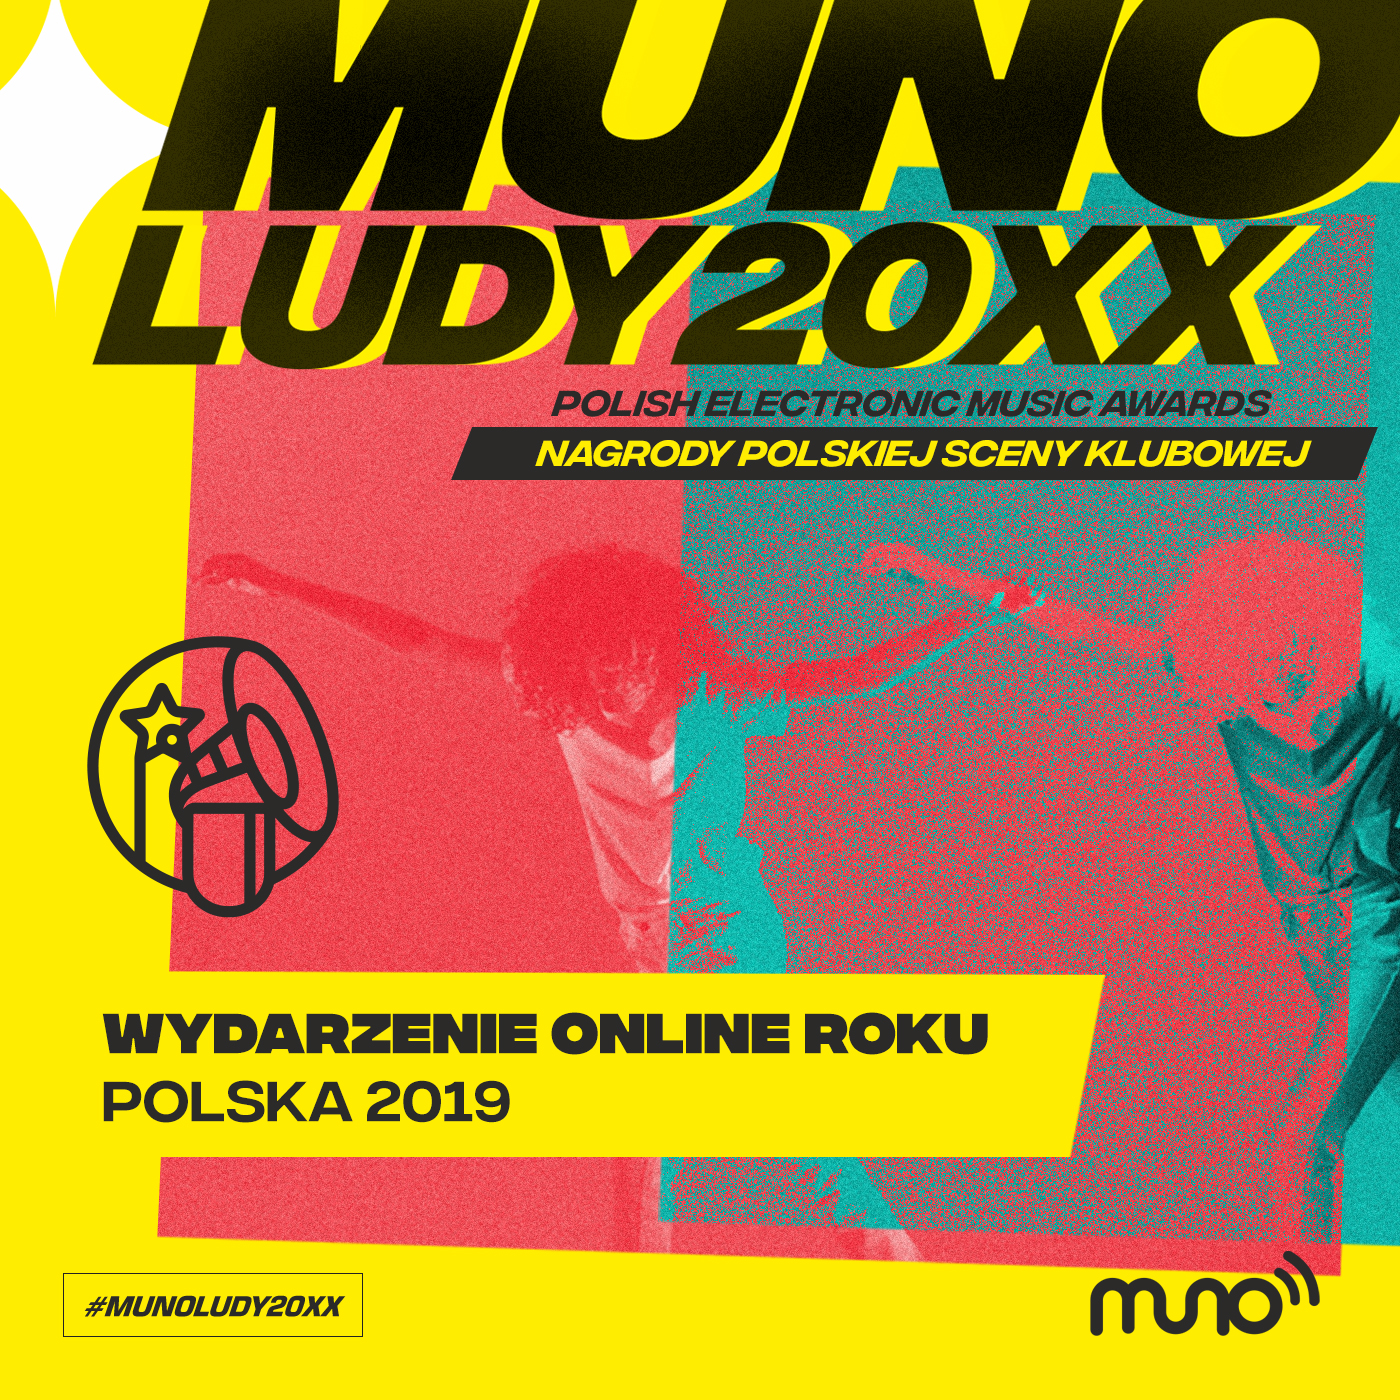 Munoludy 20XX Wydarzenie Online Roku Polska 2019